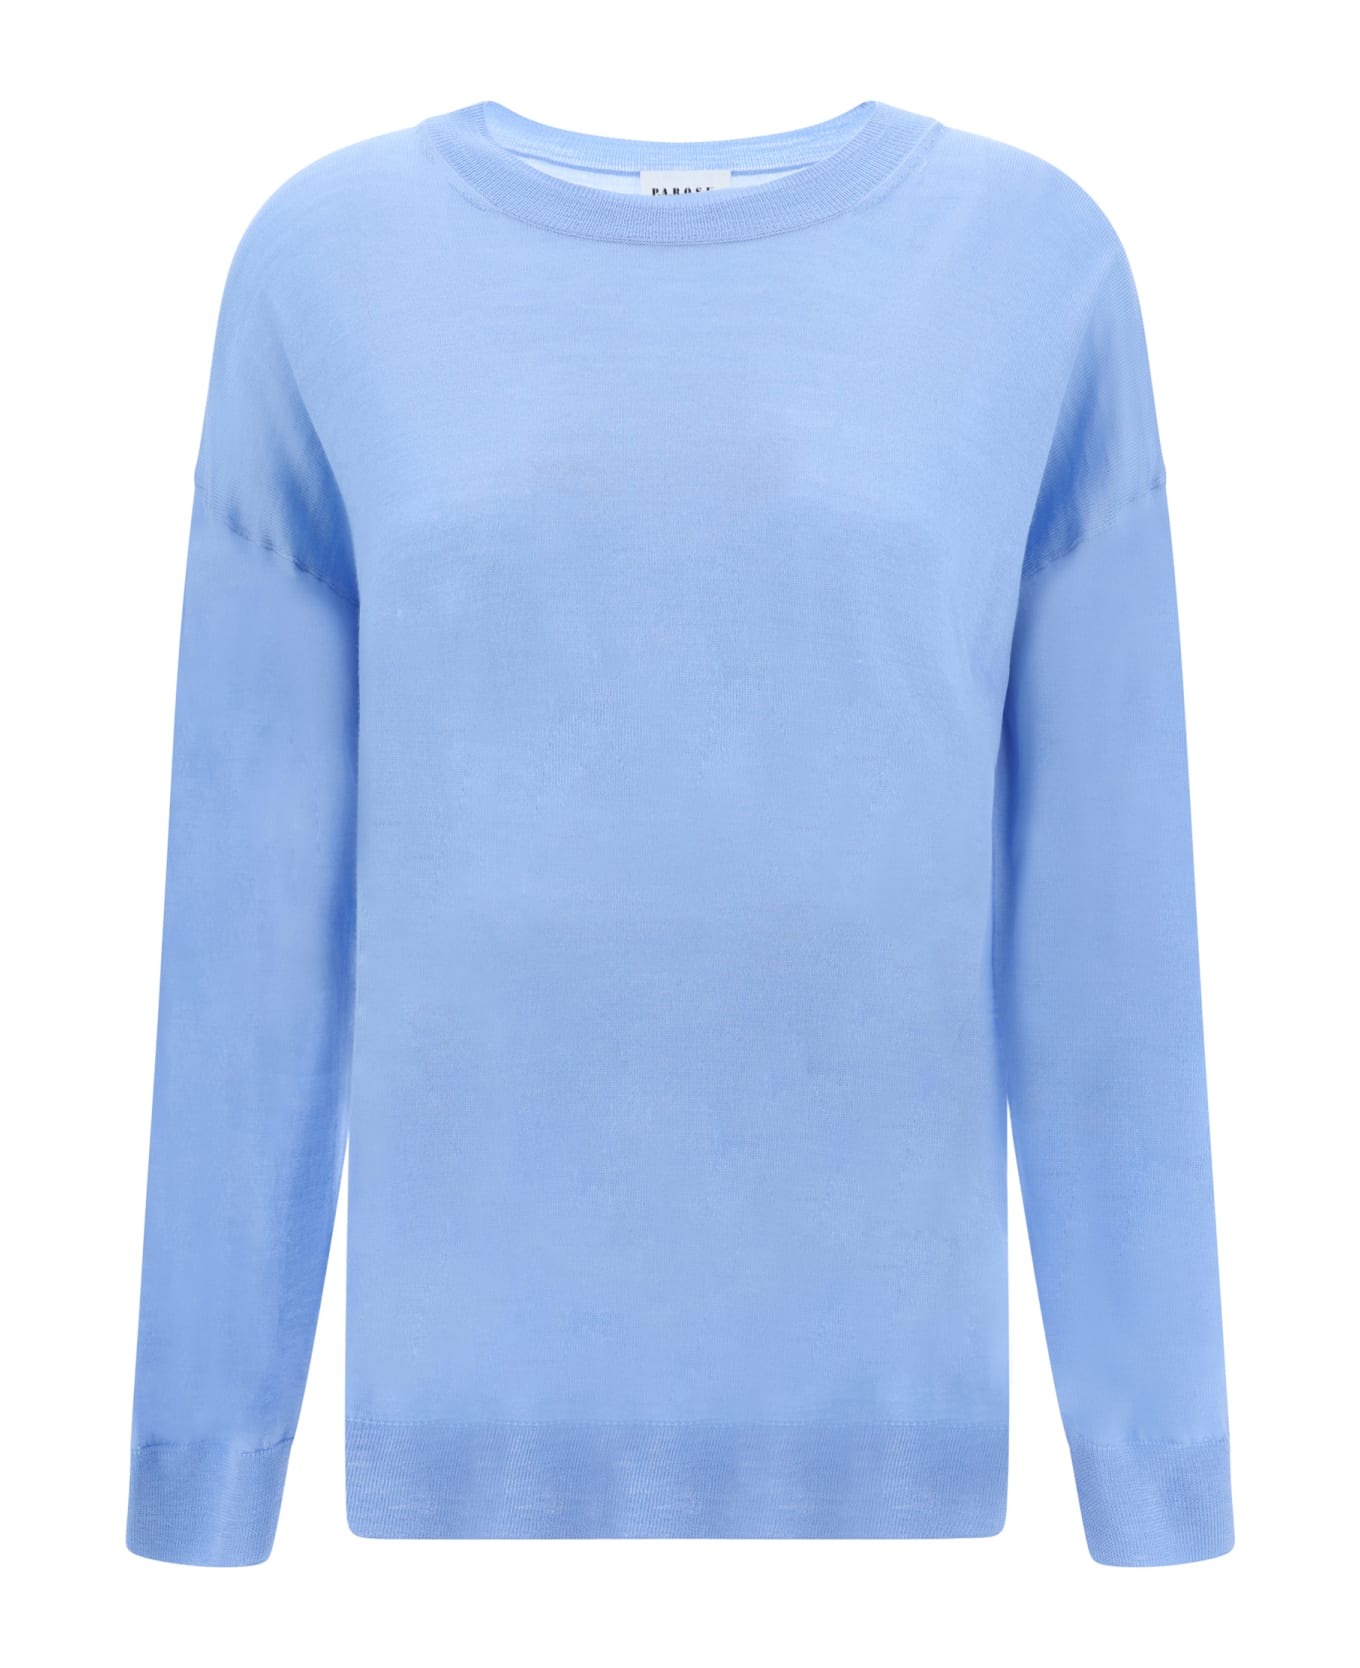 Parosh Linfa Sweater - Azzurro Polvere ニットウェア